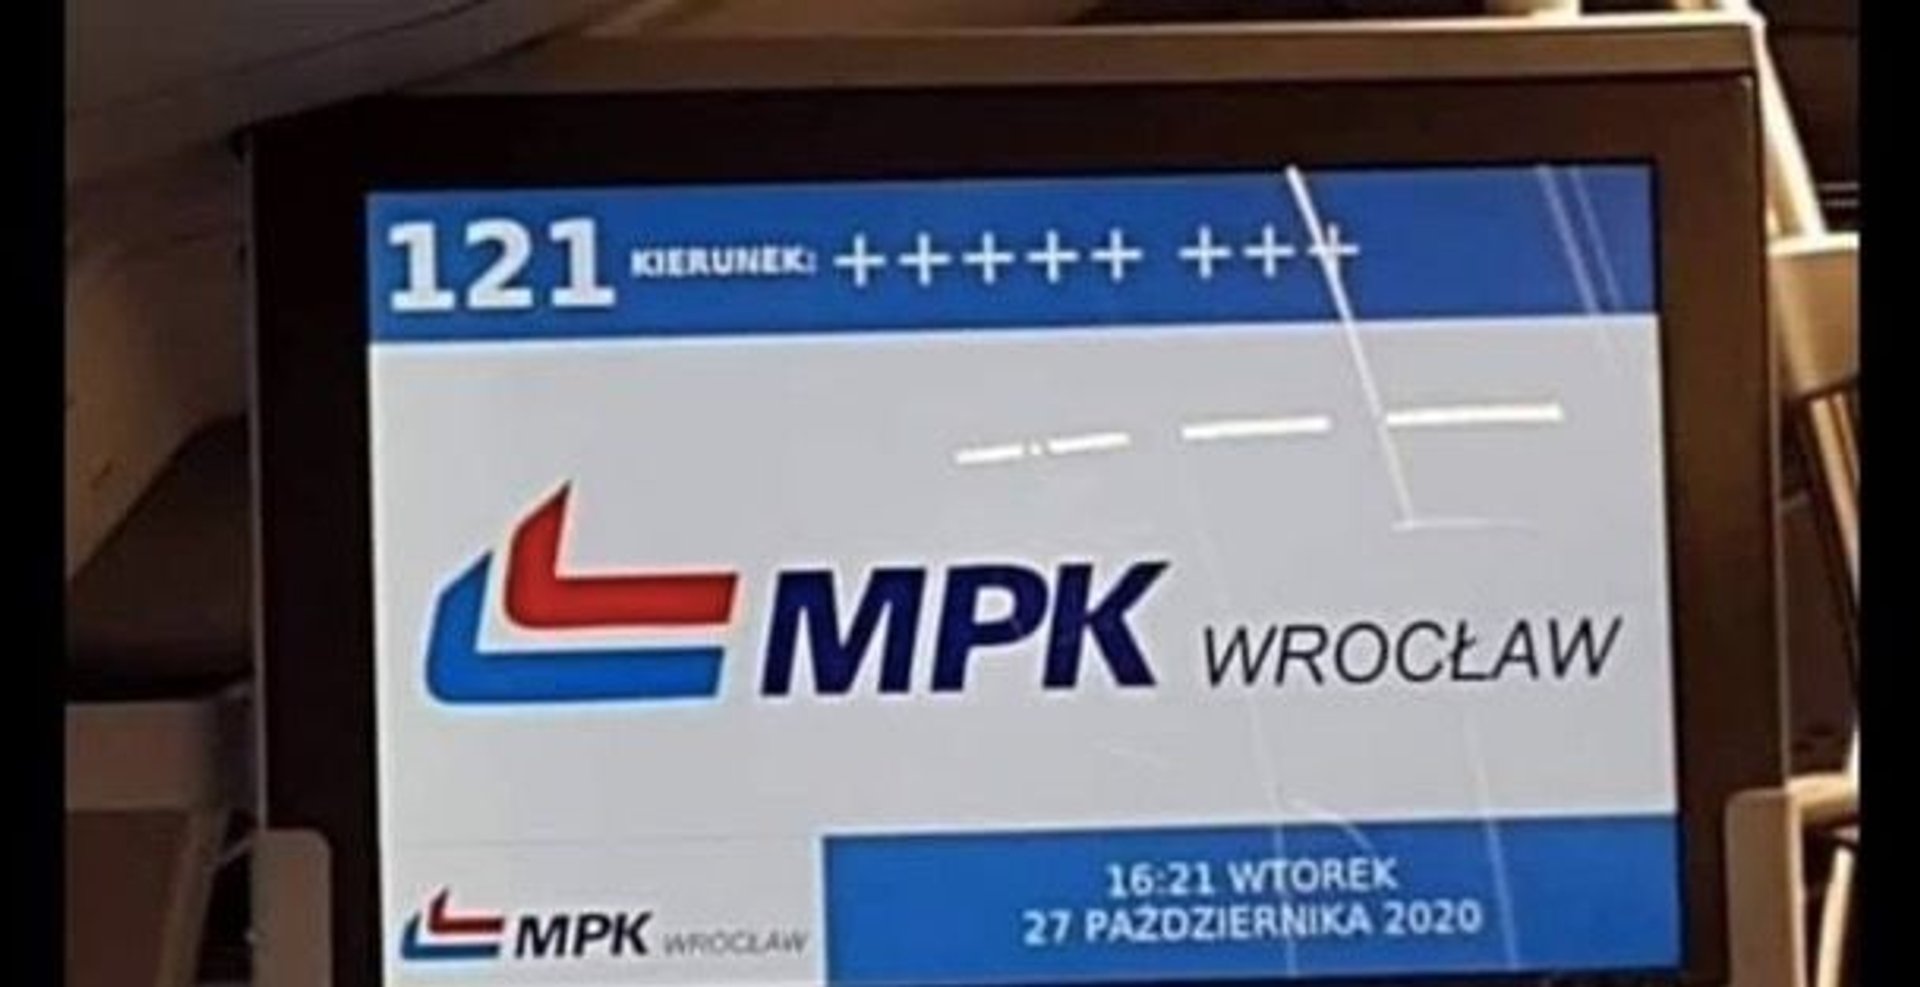 Wrocławskie MPK bohaterem artykułu TVP Info